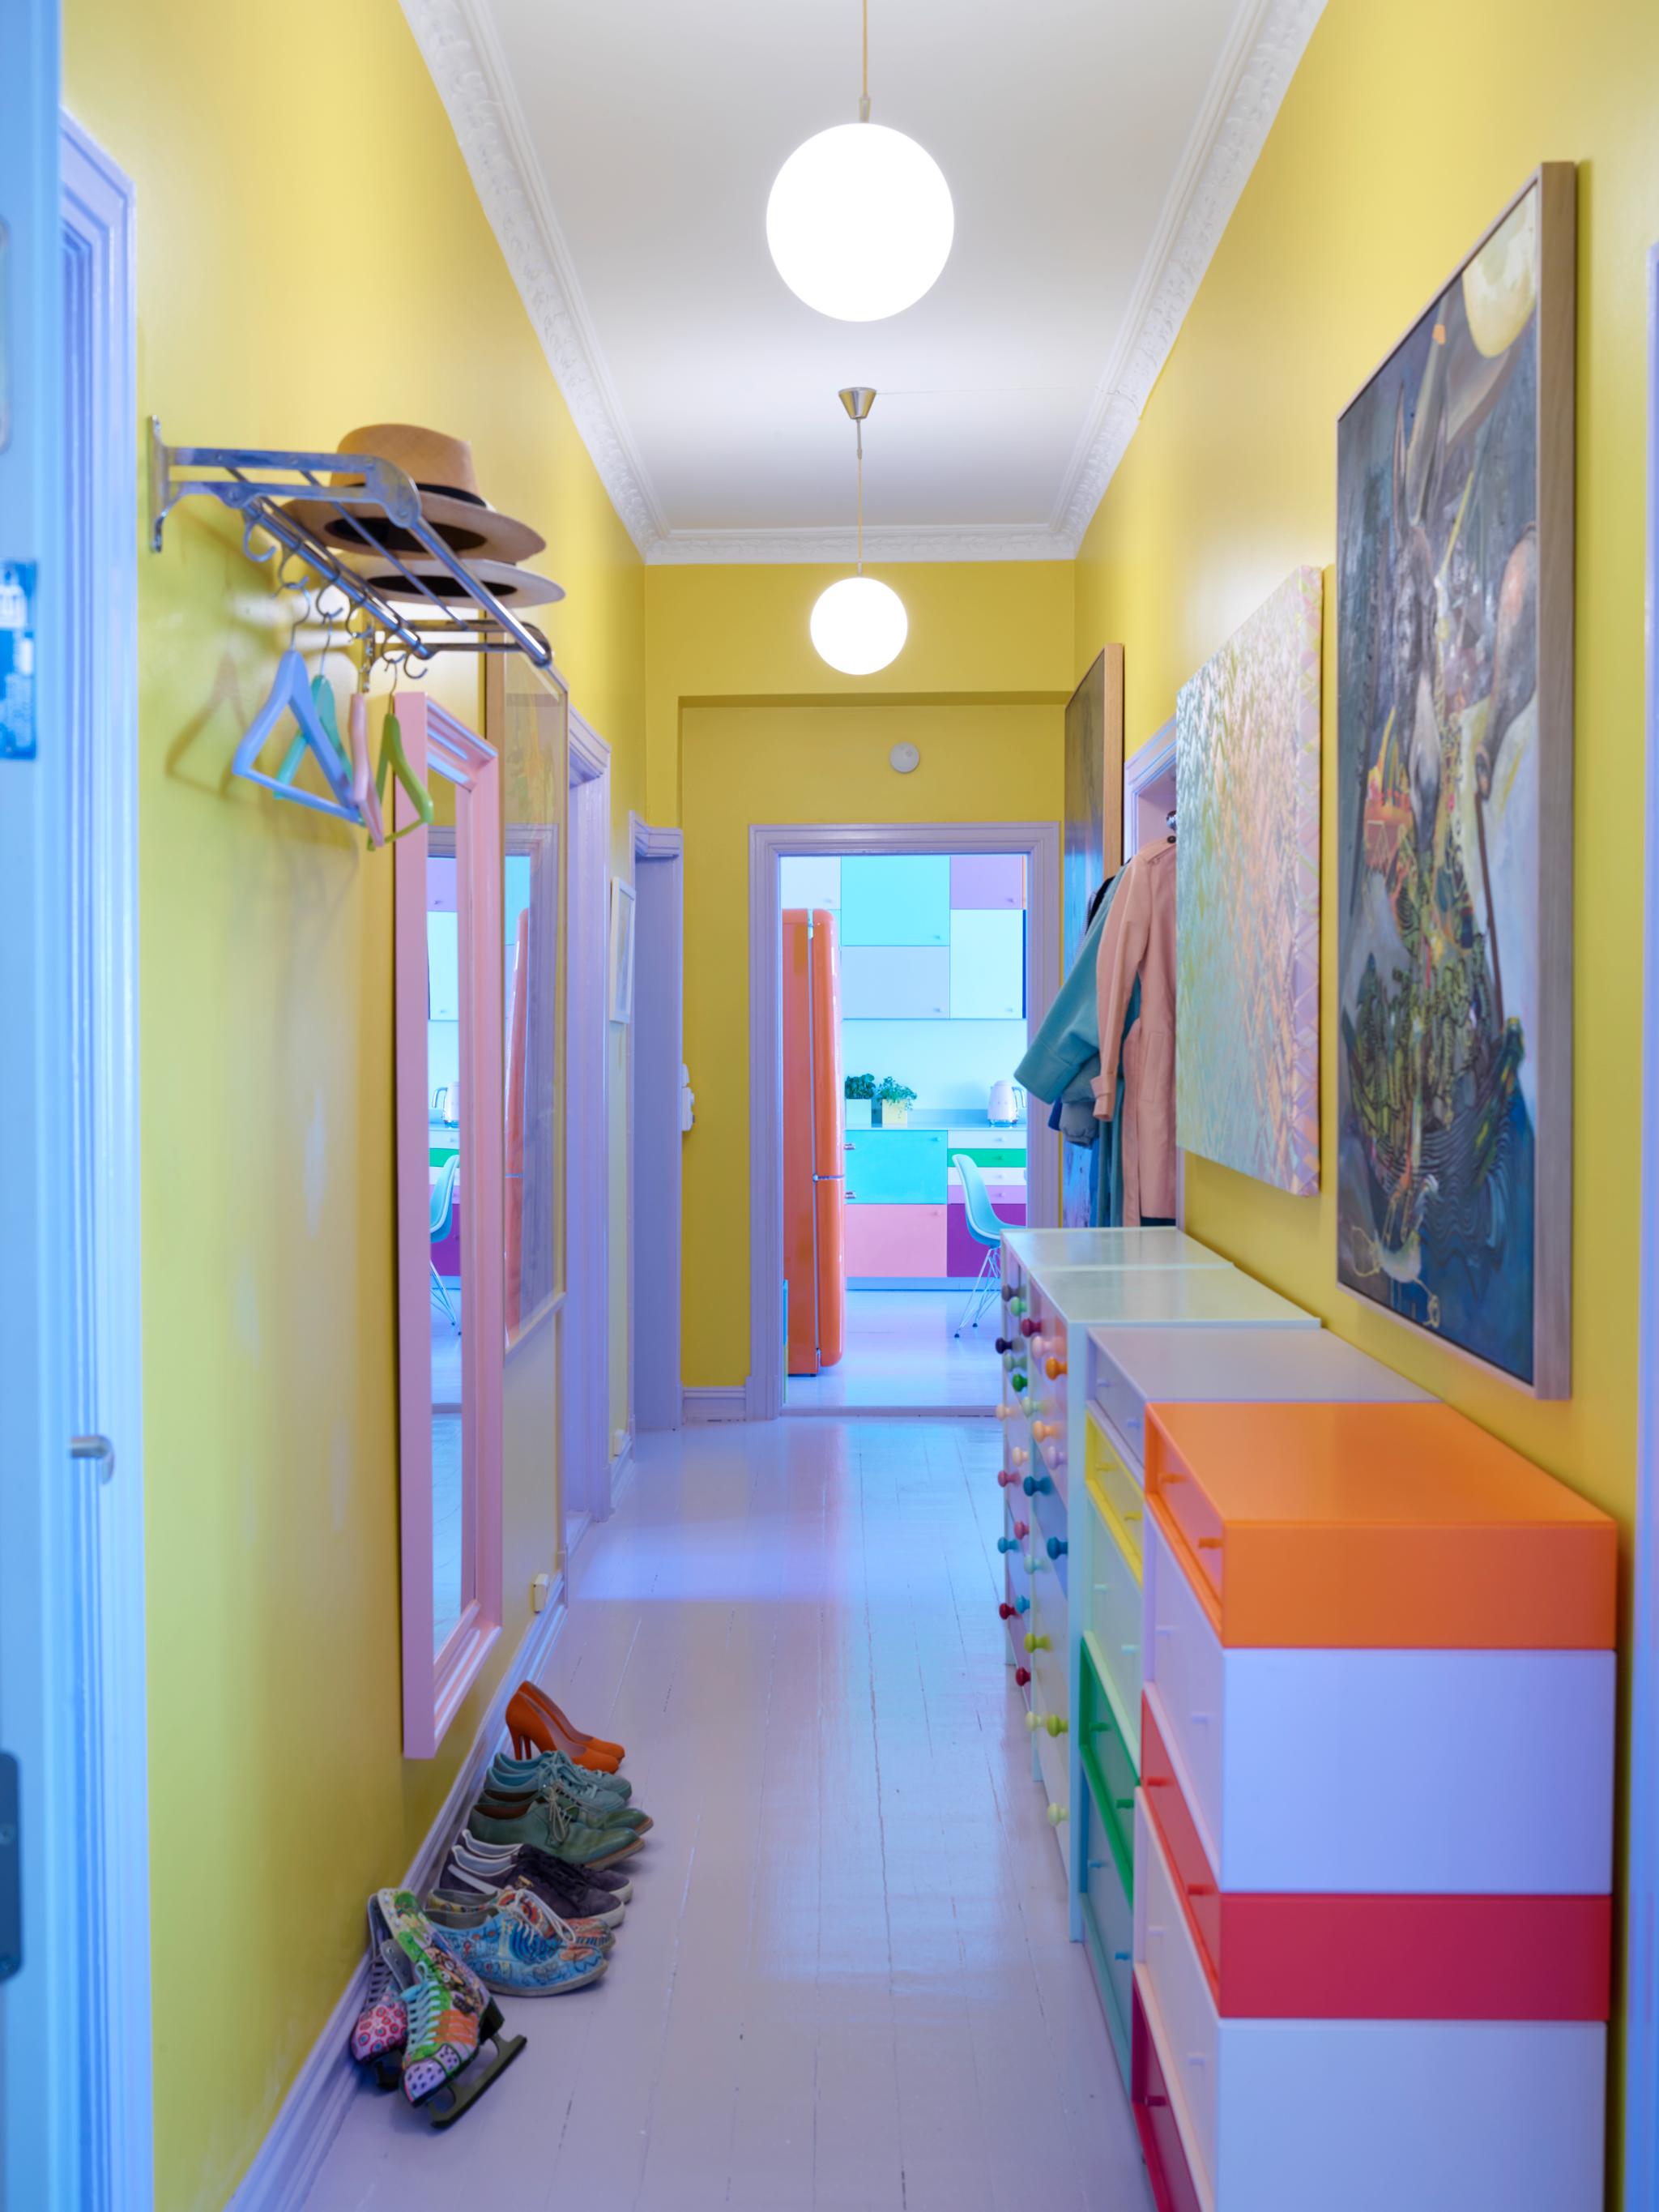 Du kan ikke unngå å bli i godt humør når du åpner døren og møtes av denne lysende gule gangen. Ulike kommoder med mangefargede skuffer og et stort rosa speil gjør inntrykket komplett.